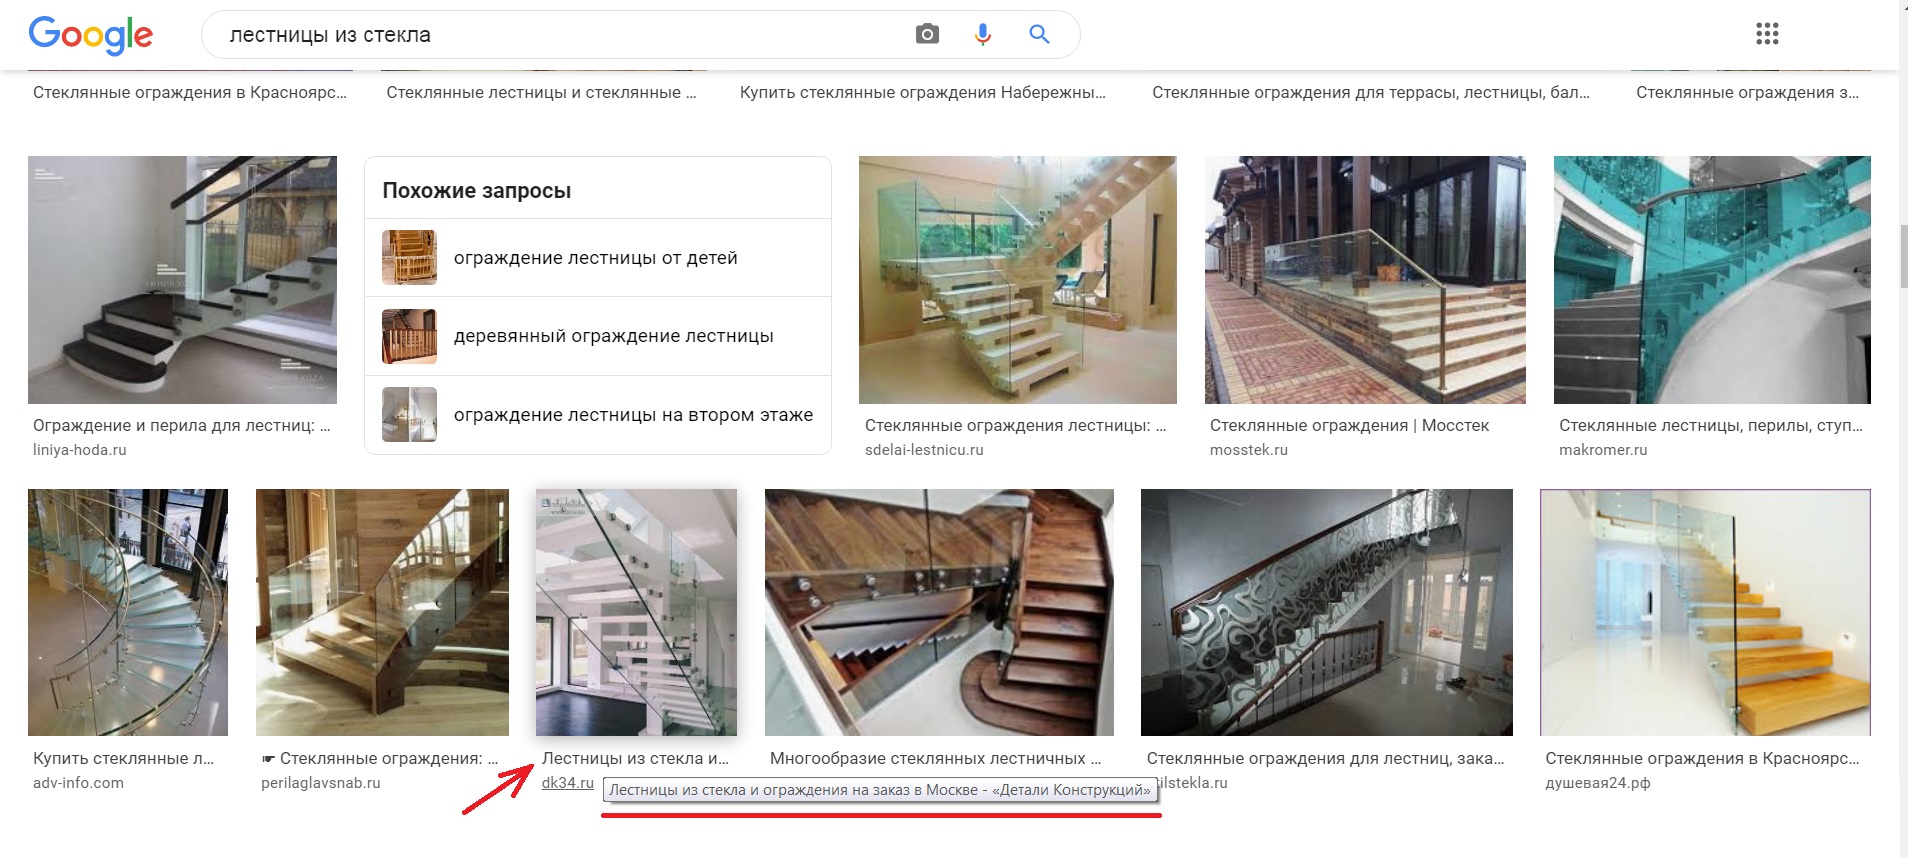 seo-продвижение архитектурной компании, ключевые запросы Google.jpg